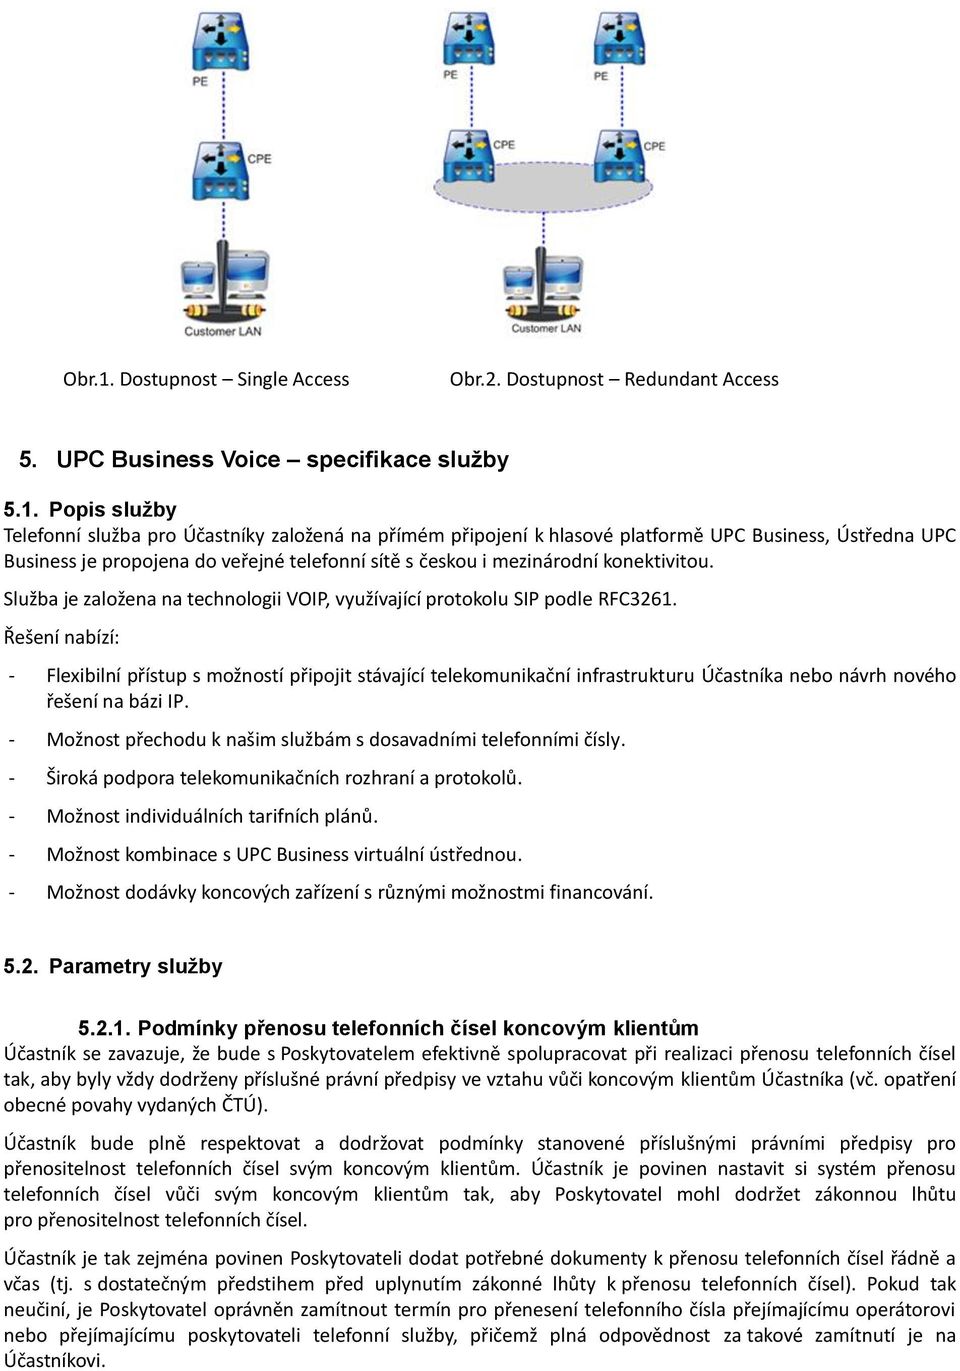 Popis služby Telefonní služba pro Účastníky založená na přímém připojení k hlasové platformě UPC Business, Ústředna UPC Business je propojena do veřejné telefonní sítě s českou i mezinárodní